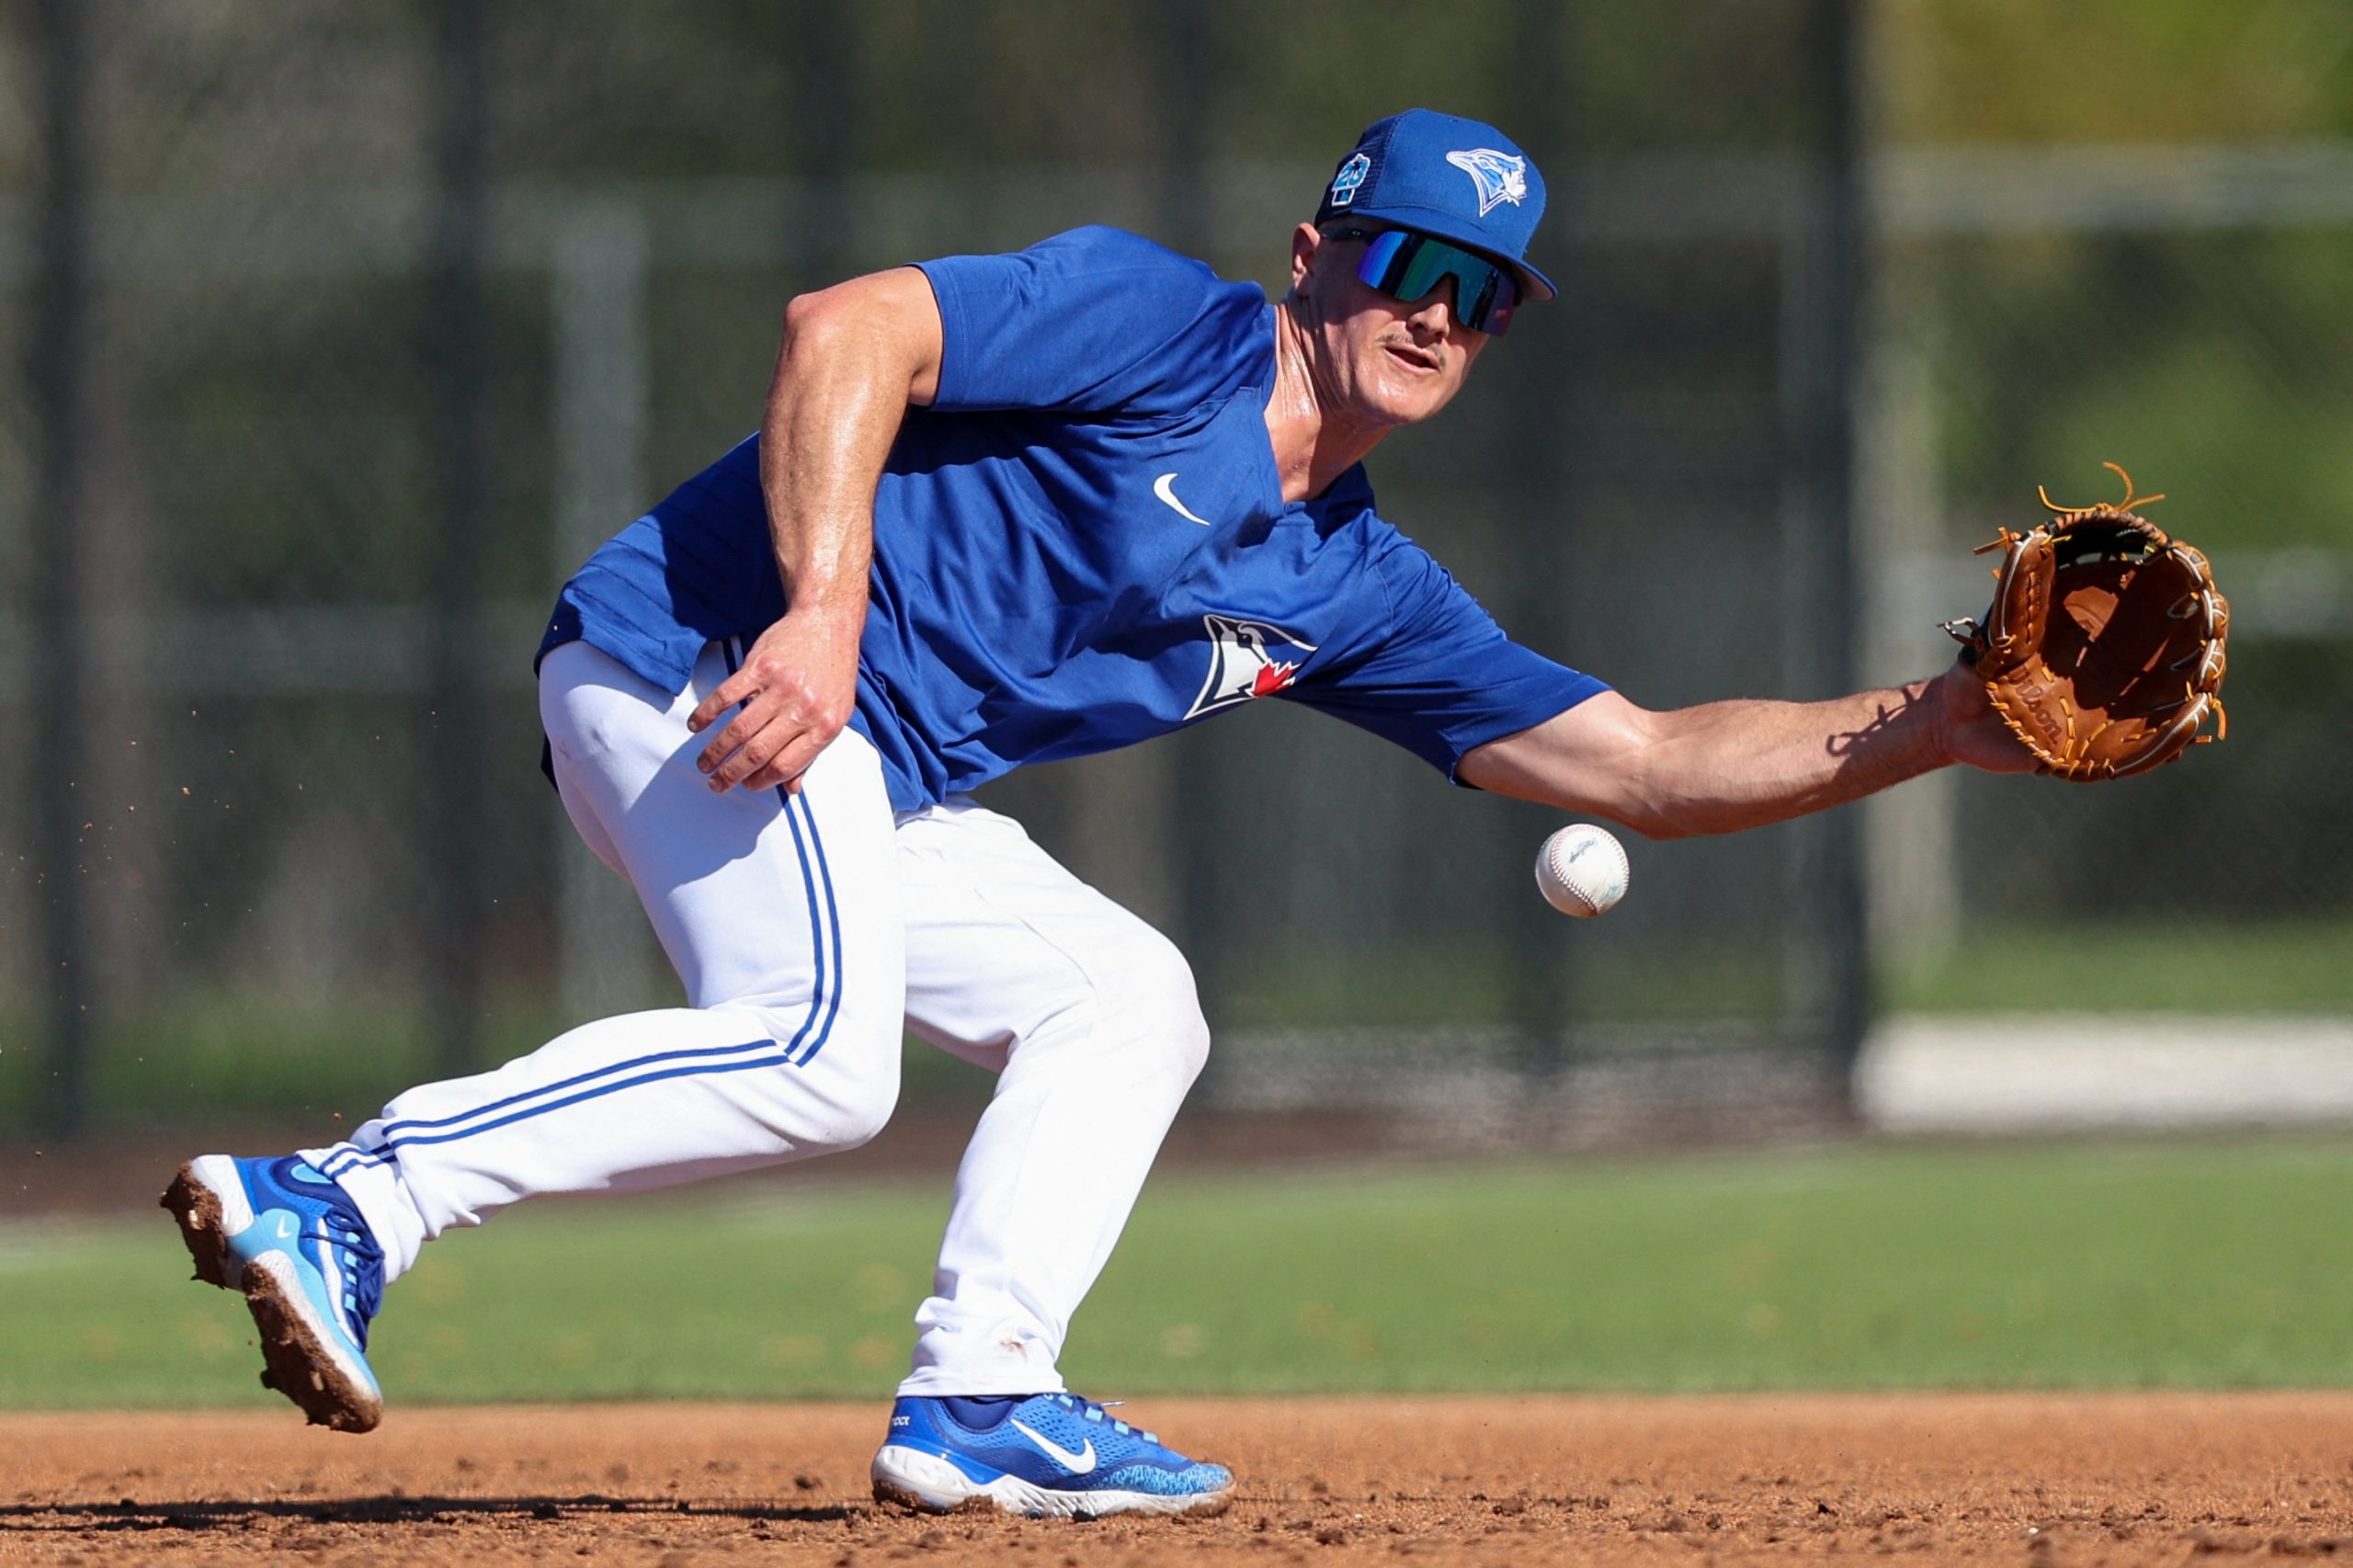 Toronto Blue Jays: Matt Chapman 2022 - Officially Licensed MLB